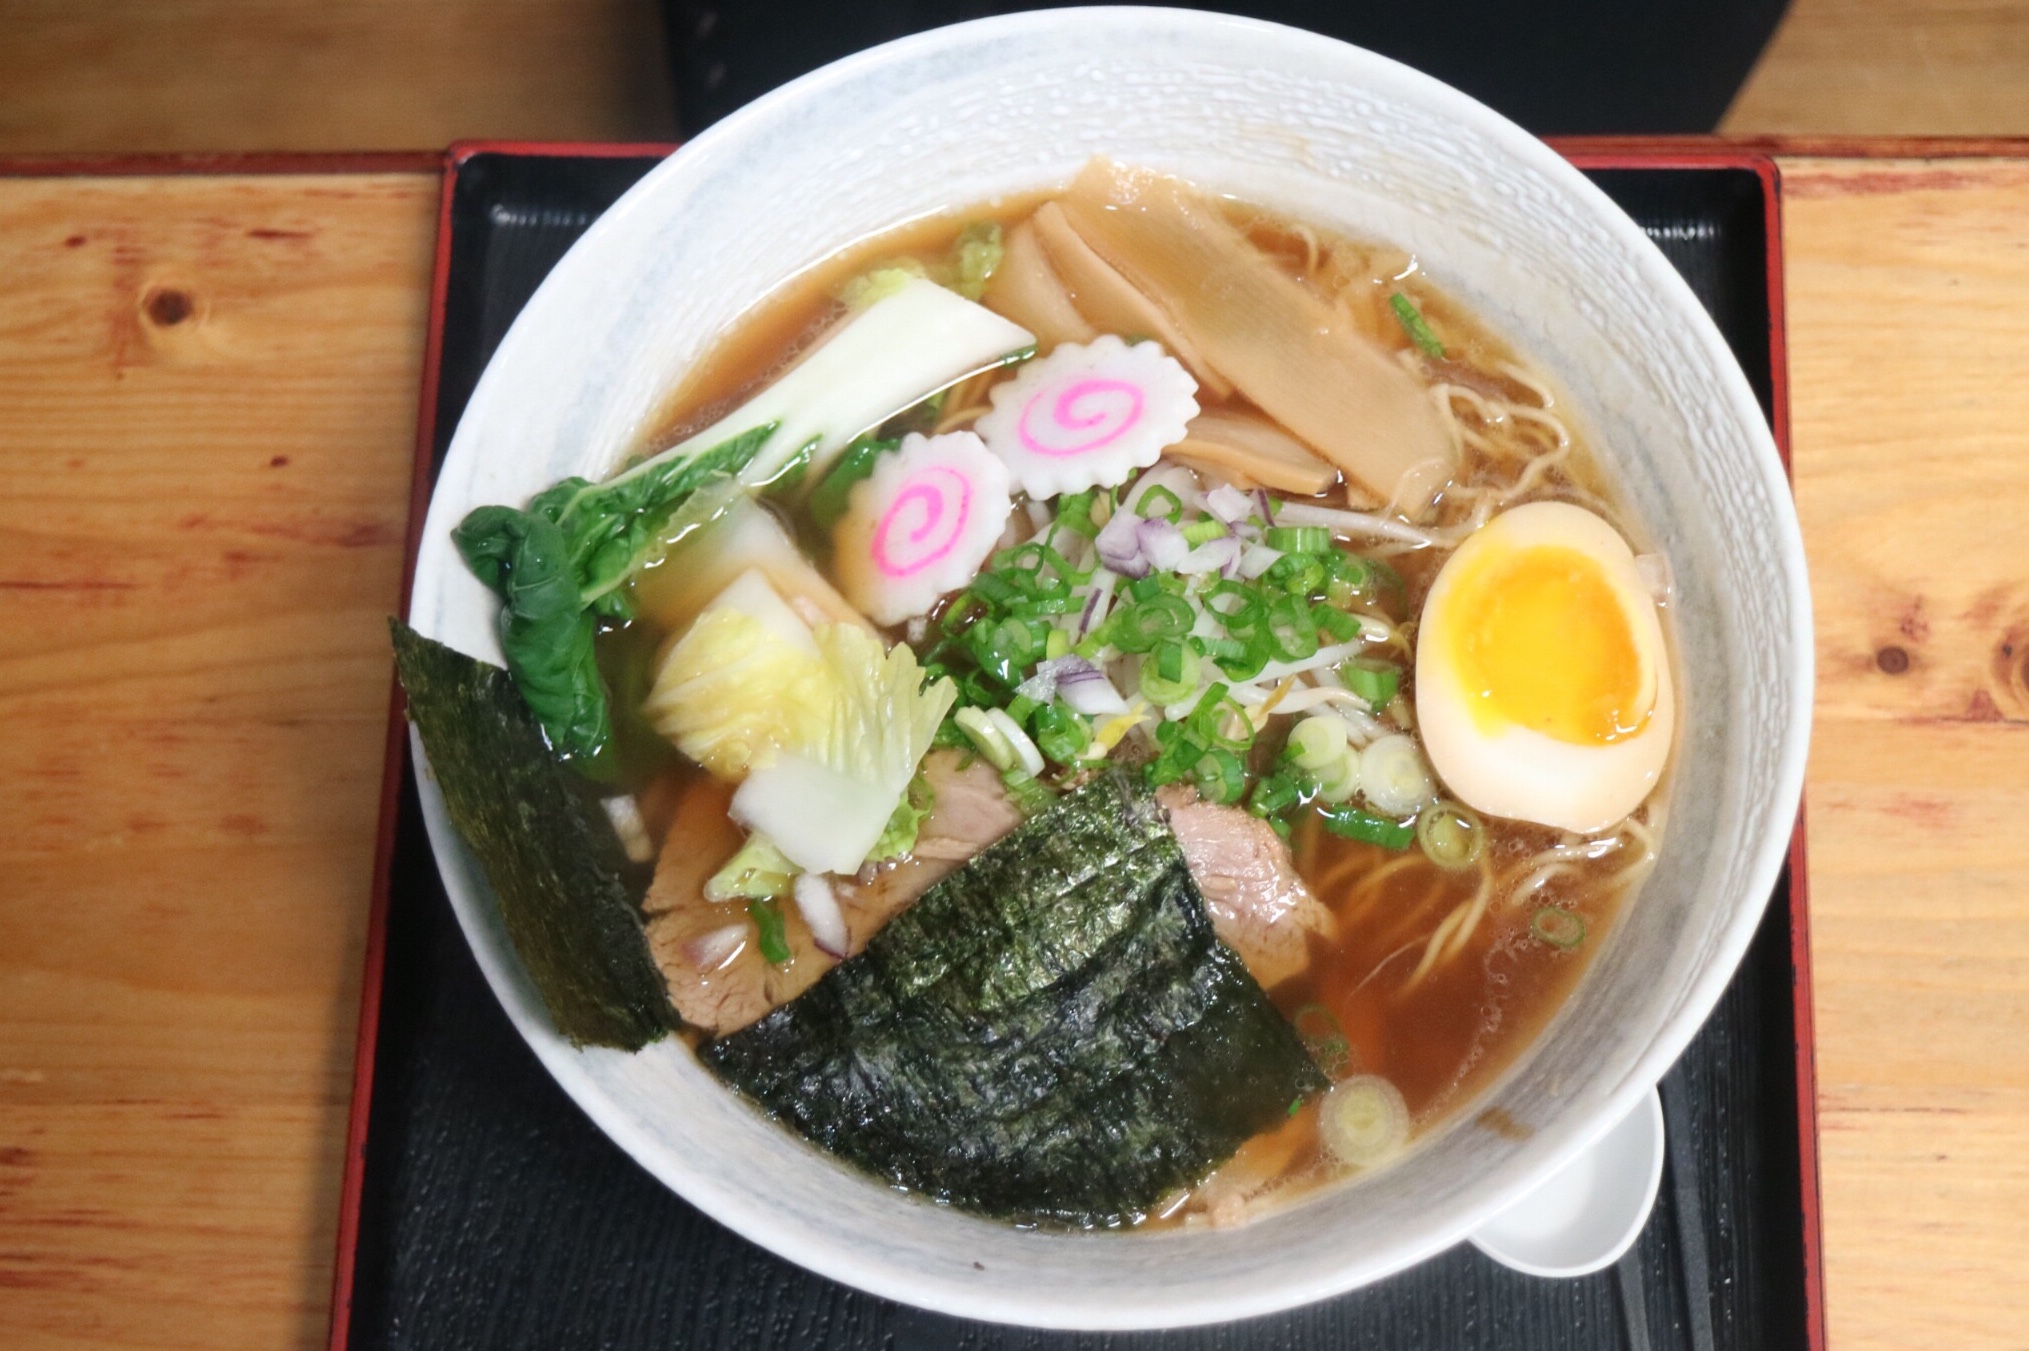 Menya Japanese Noodle provides affordable ramen bowls - PickyDiners.com